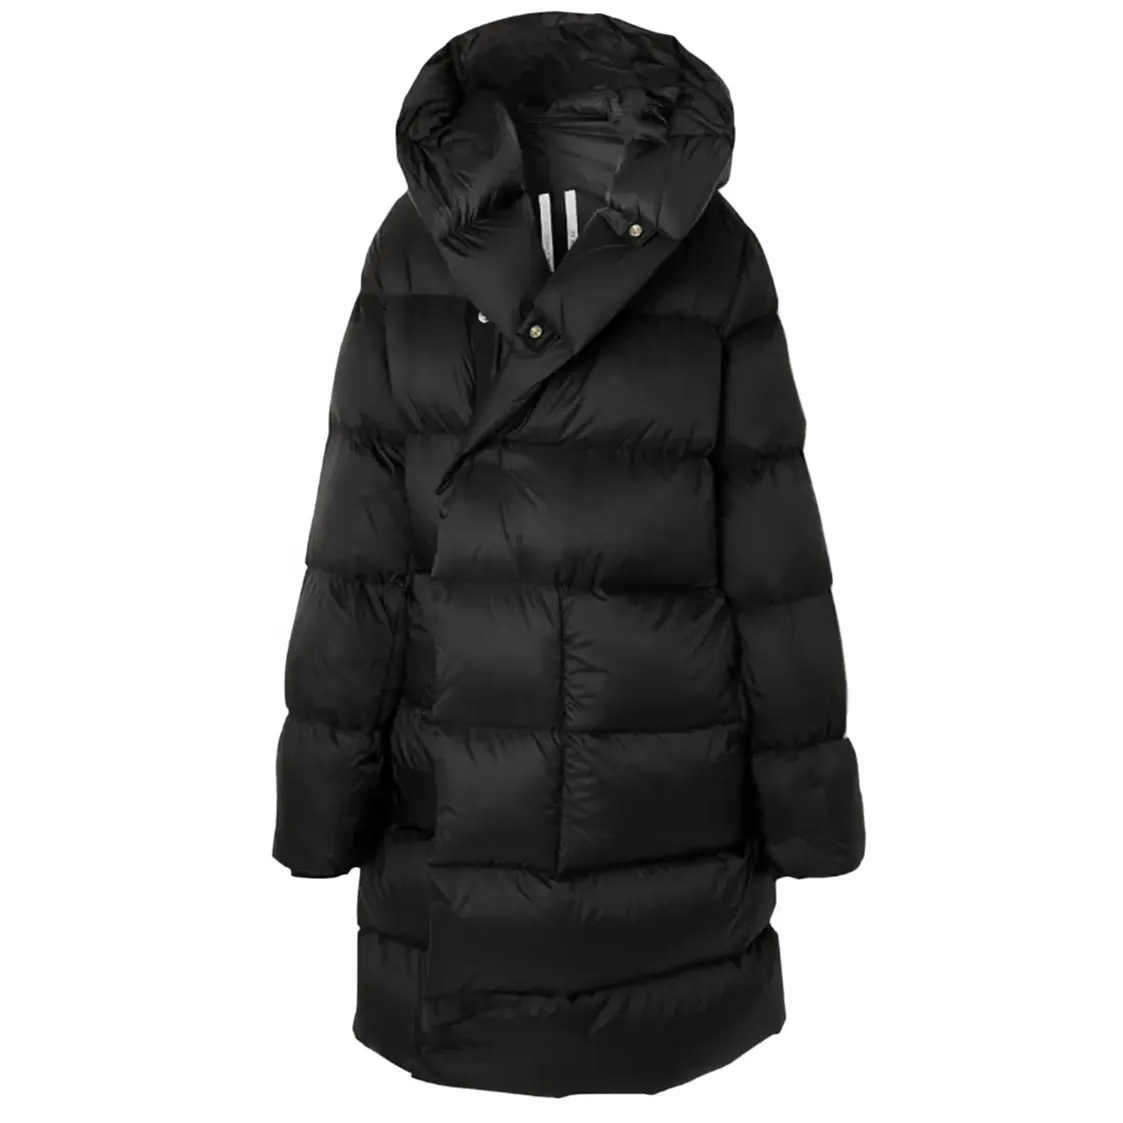 冬の暖かい女性の毛皮のコートの女性のショートジャケットの女性の秋の革の毛皮のコートの毛皮の女性のジャケット高品質の安い価格のジャケット